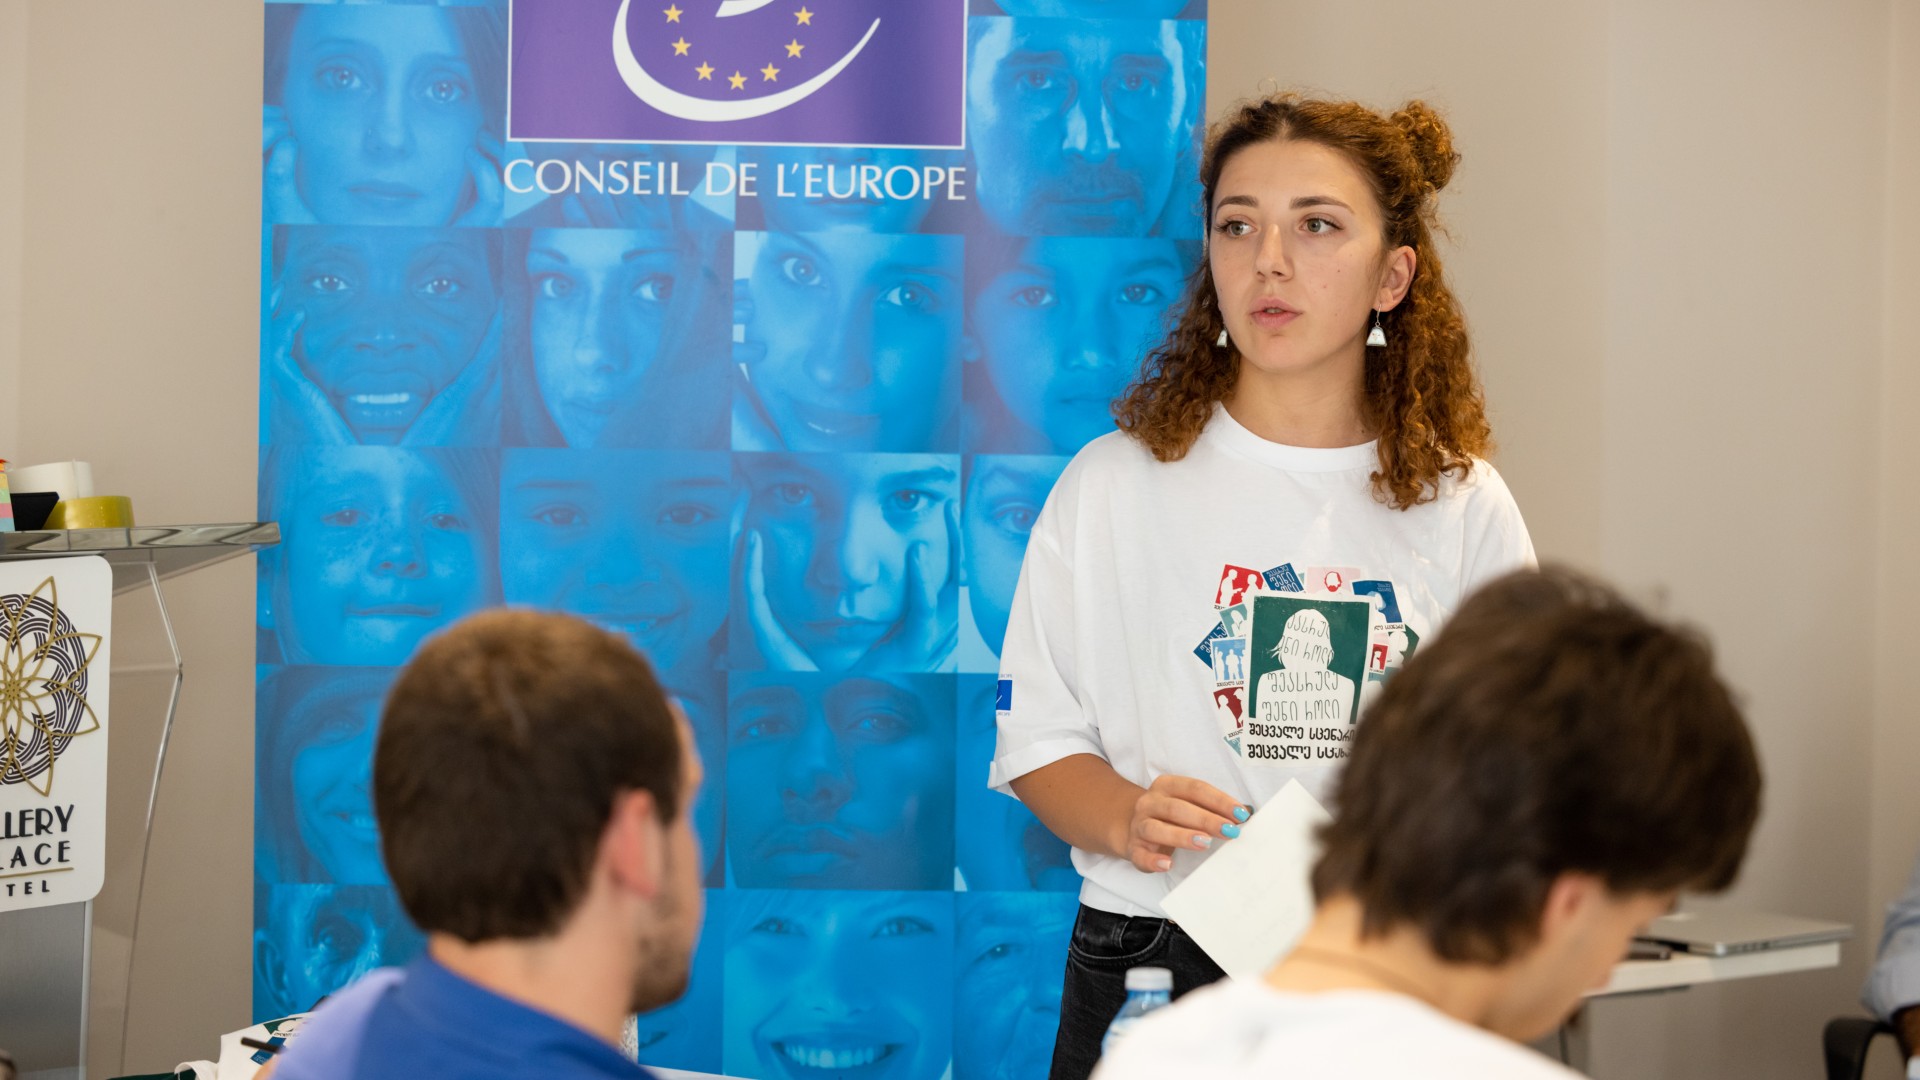 ევროპის საბჭოს ახალგაზრდული ბანაკი - ახალი შესაძლებლობა ახალგაზრდების მონაწილეობისთვის